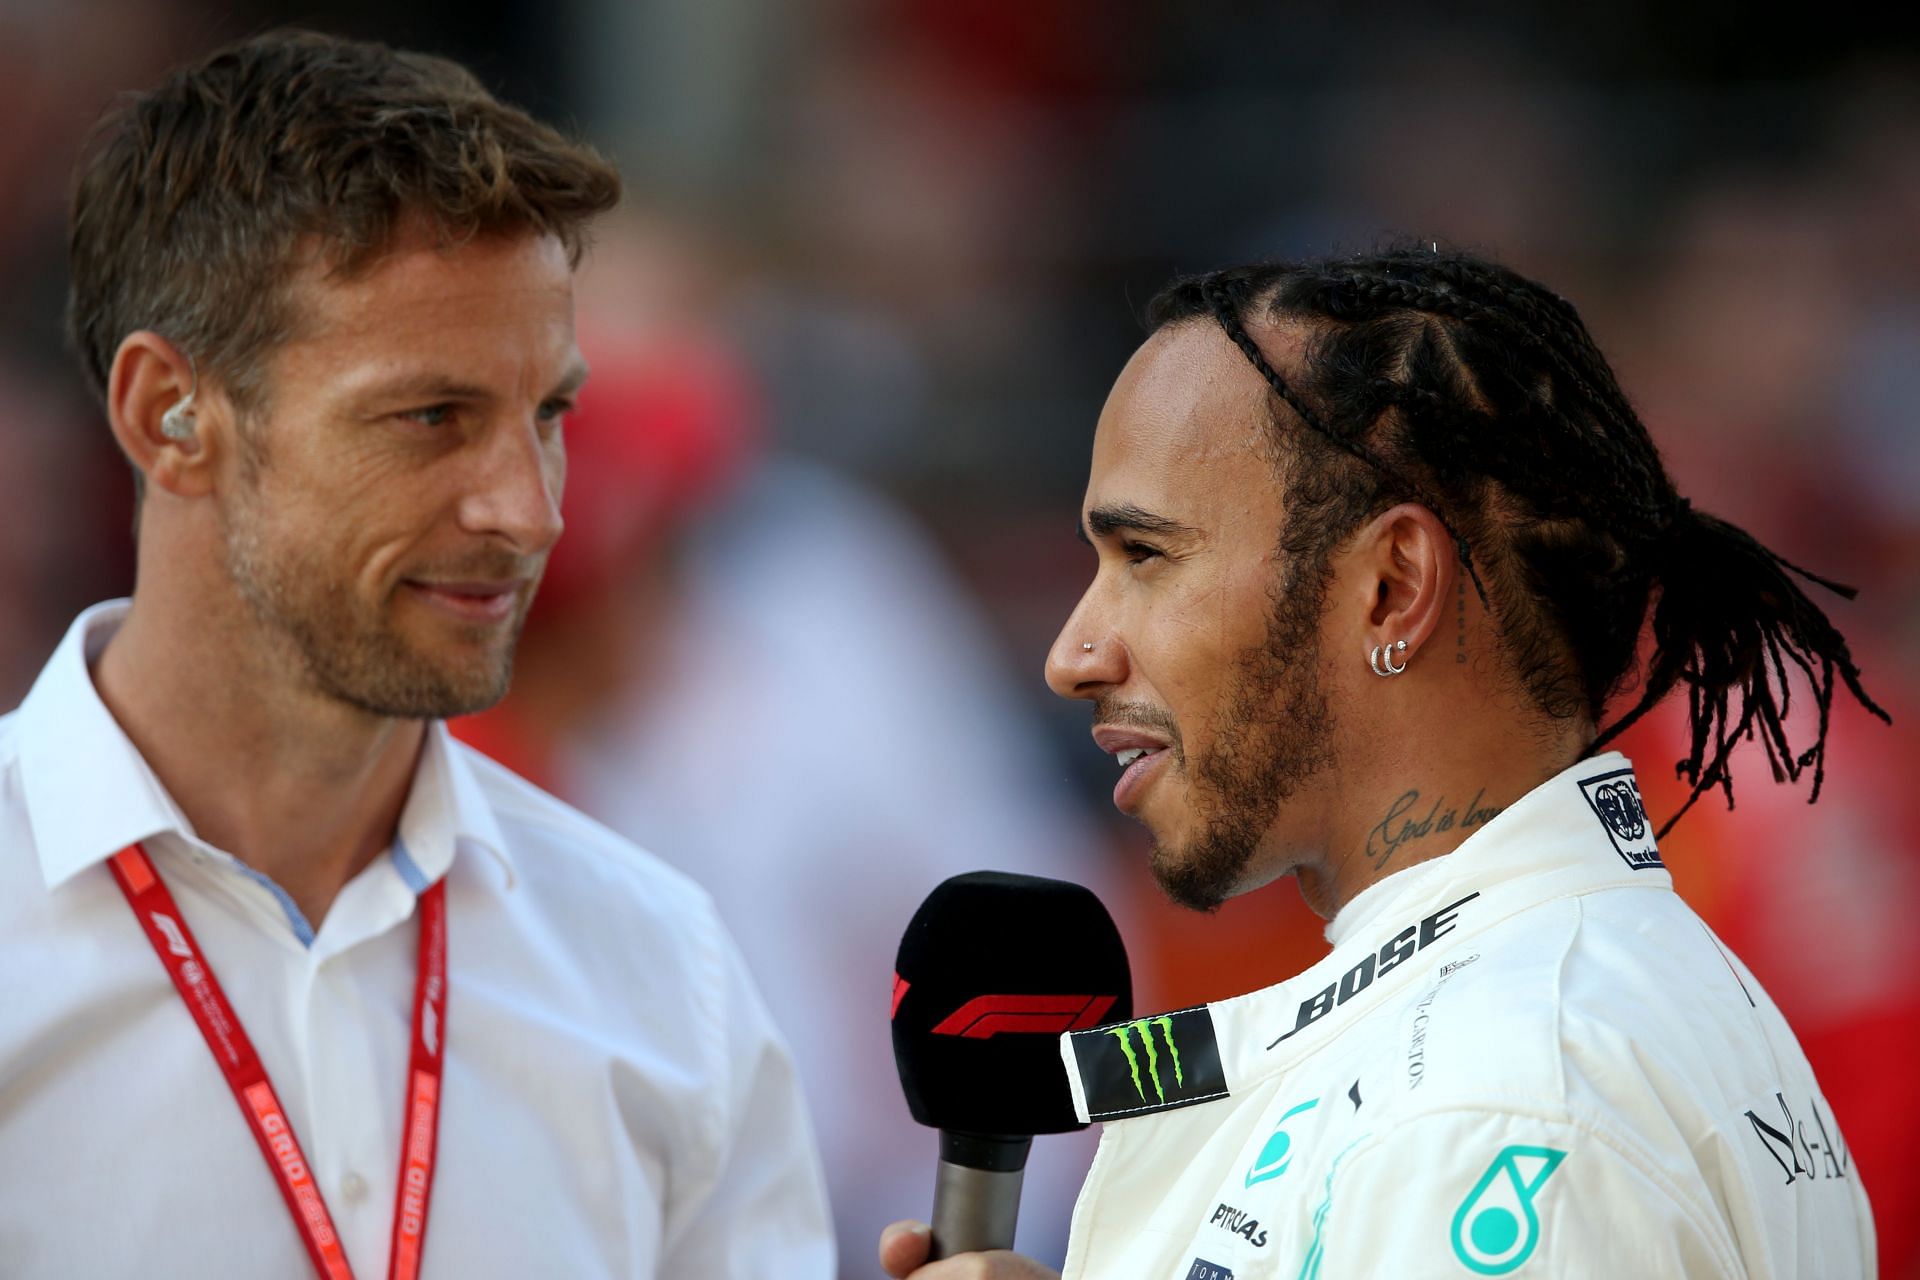 F1 Grand Prix of Russia - Jenson Button (left) interviews Lewis Hamilton